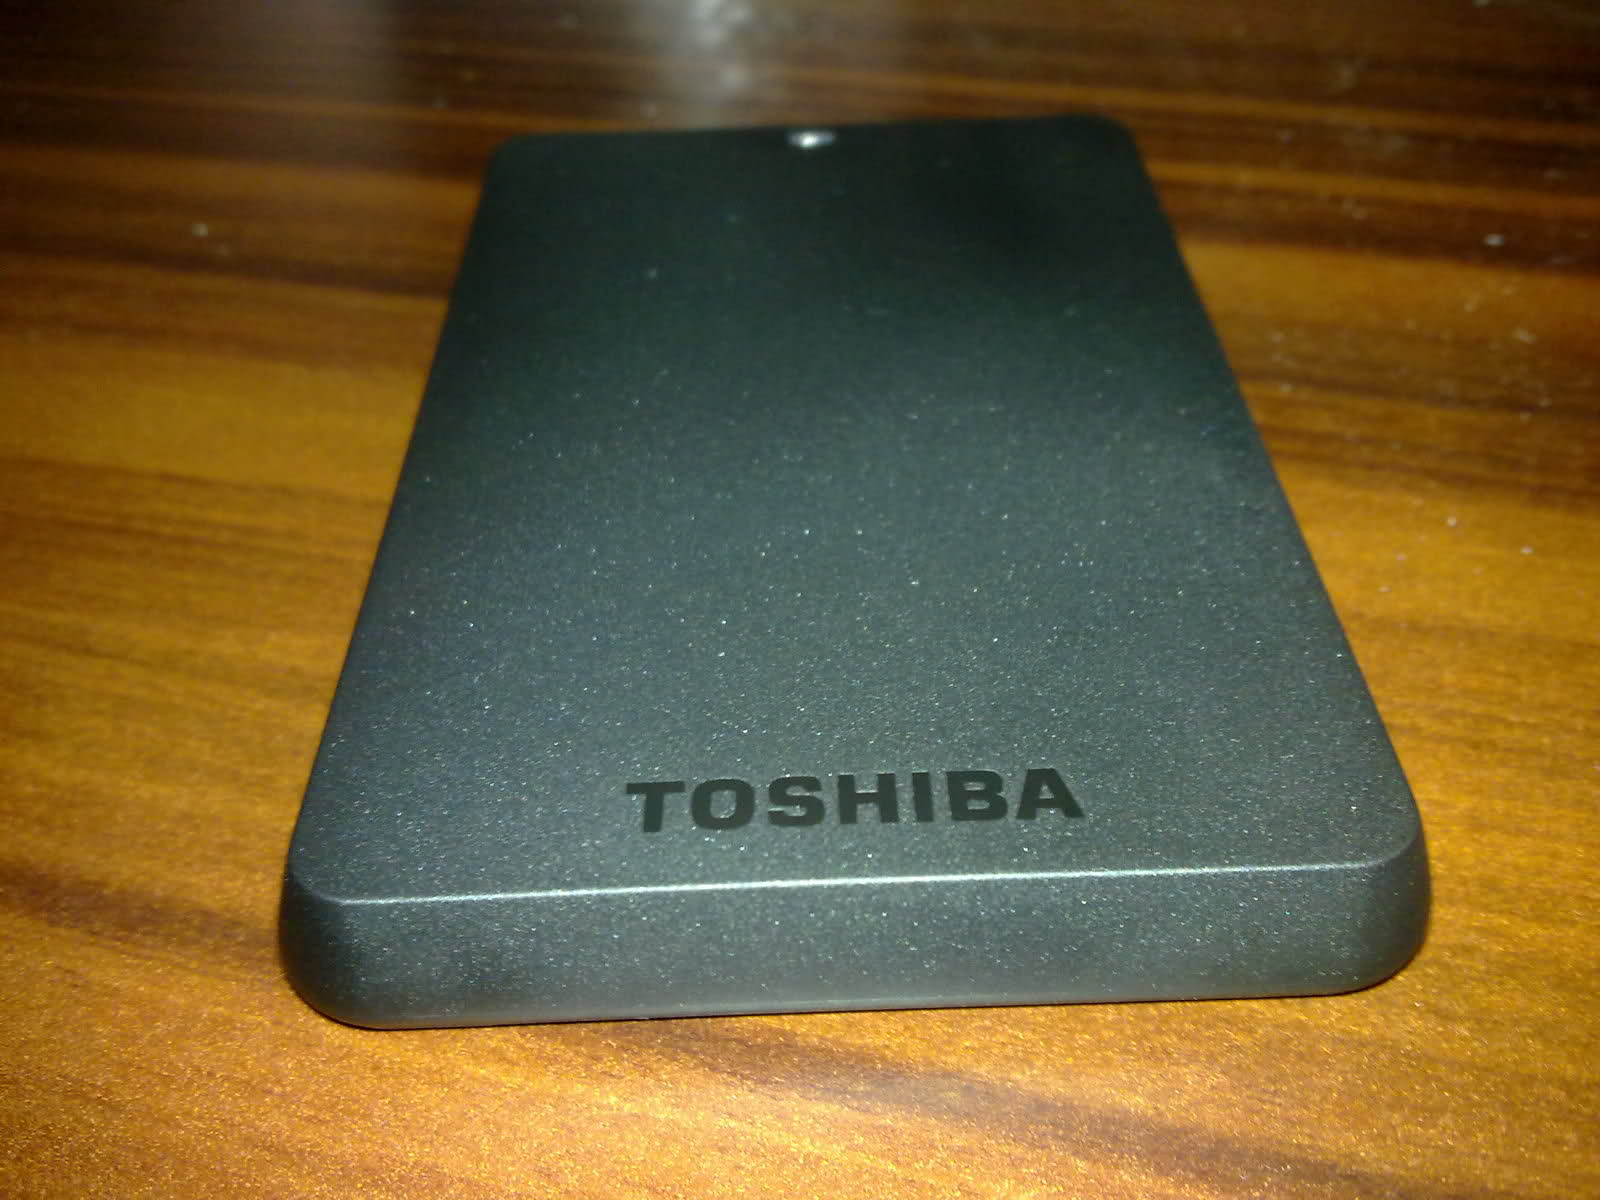  Toshiba Stor.E Basic 500GB 2.5' Usb3.0/2.0  İnceleme